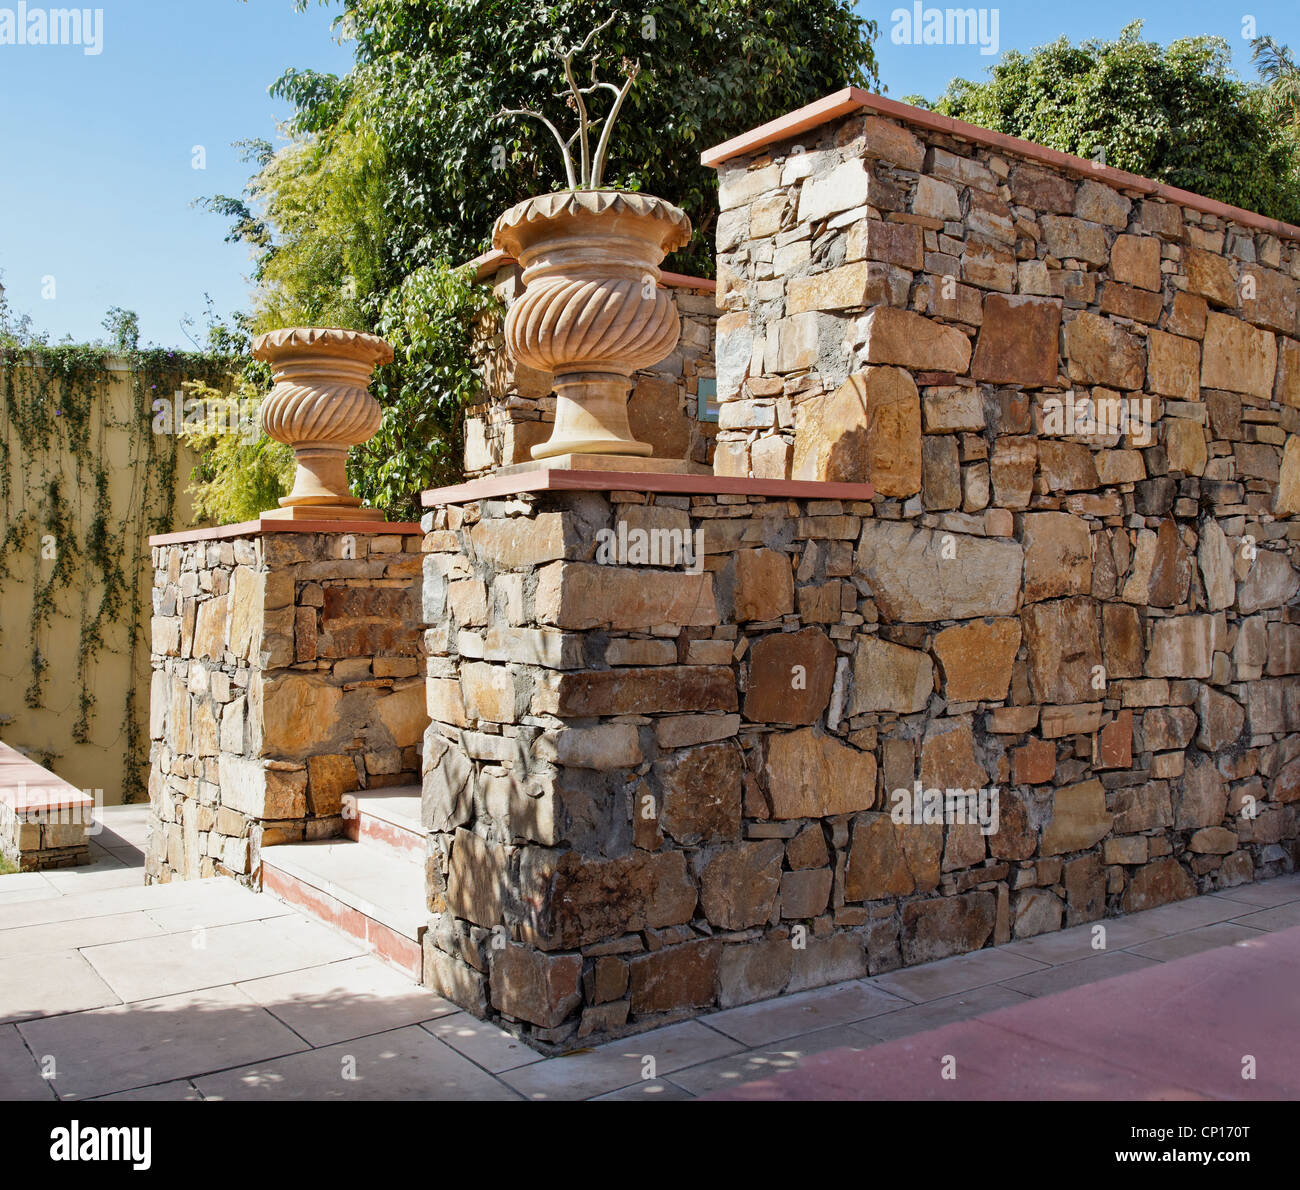 Generico con giardino di pietra scolpita vasi per piante amd randon pietra locale parete masoned Foto Stock